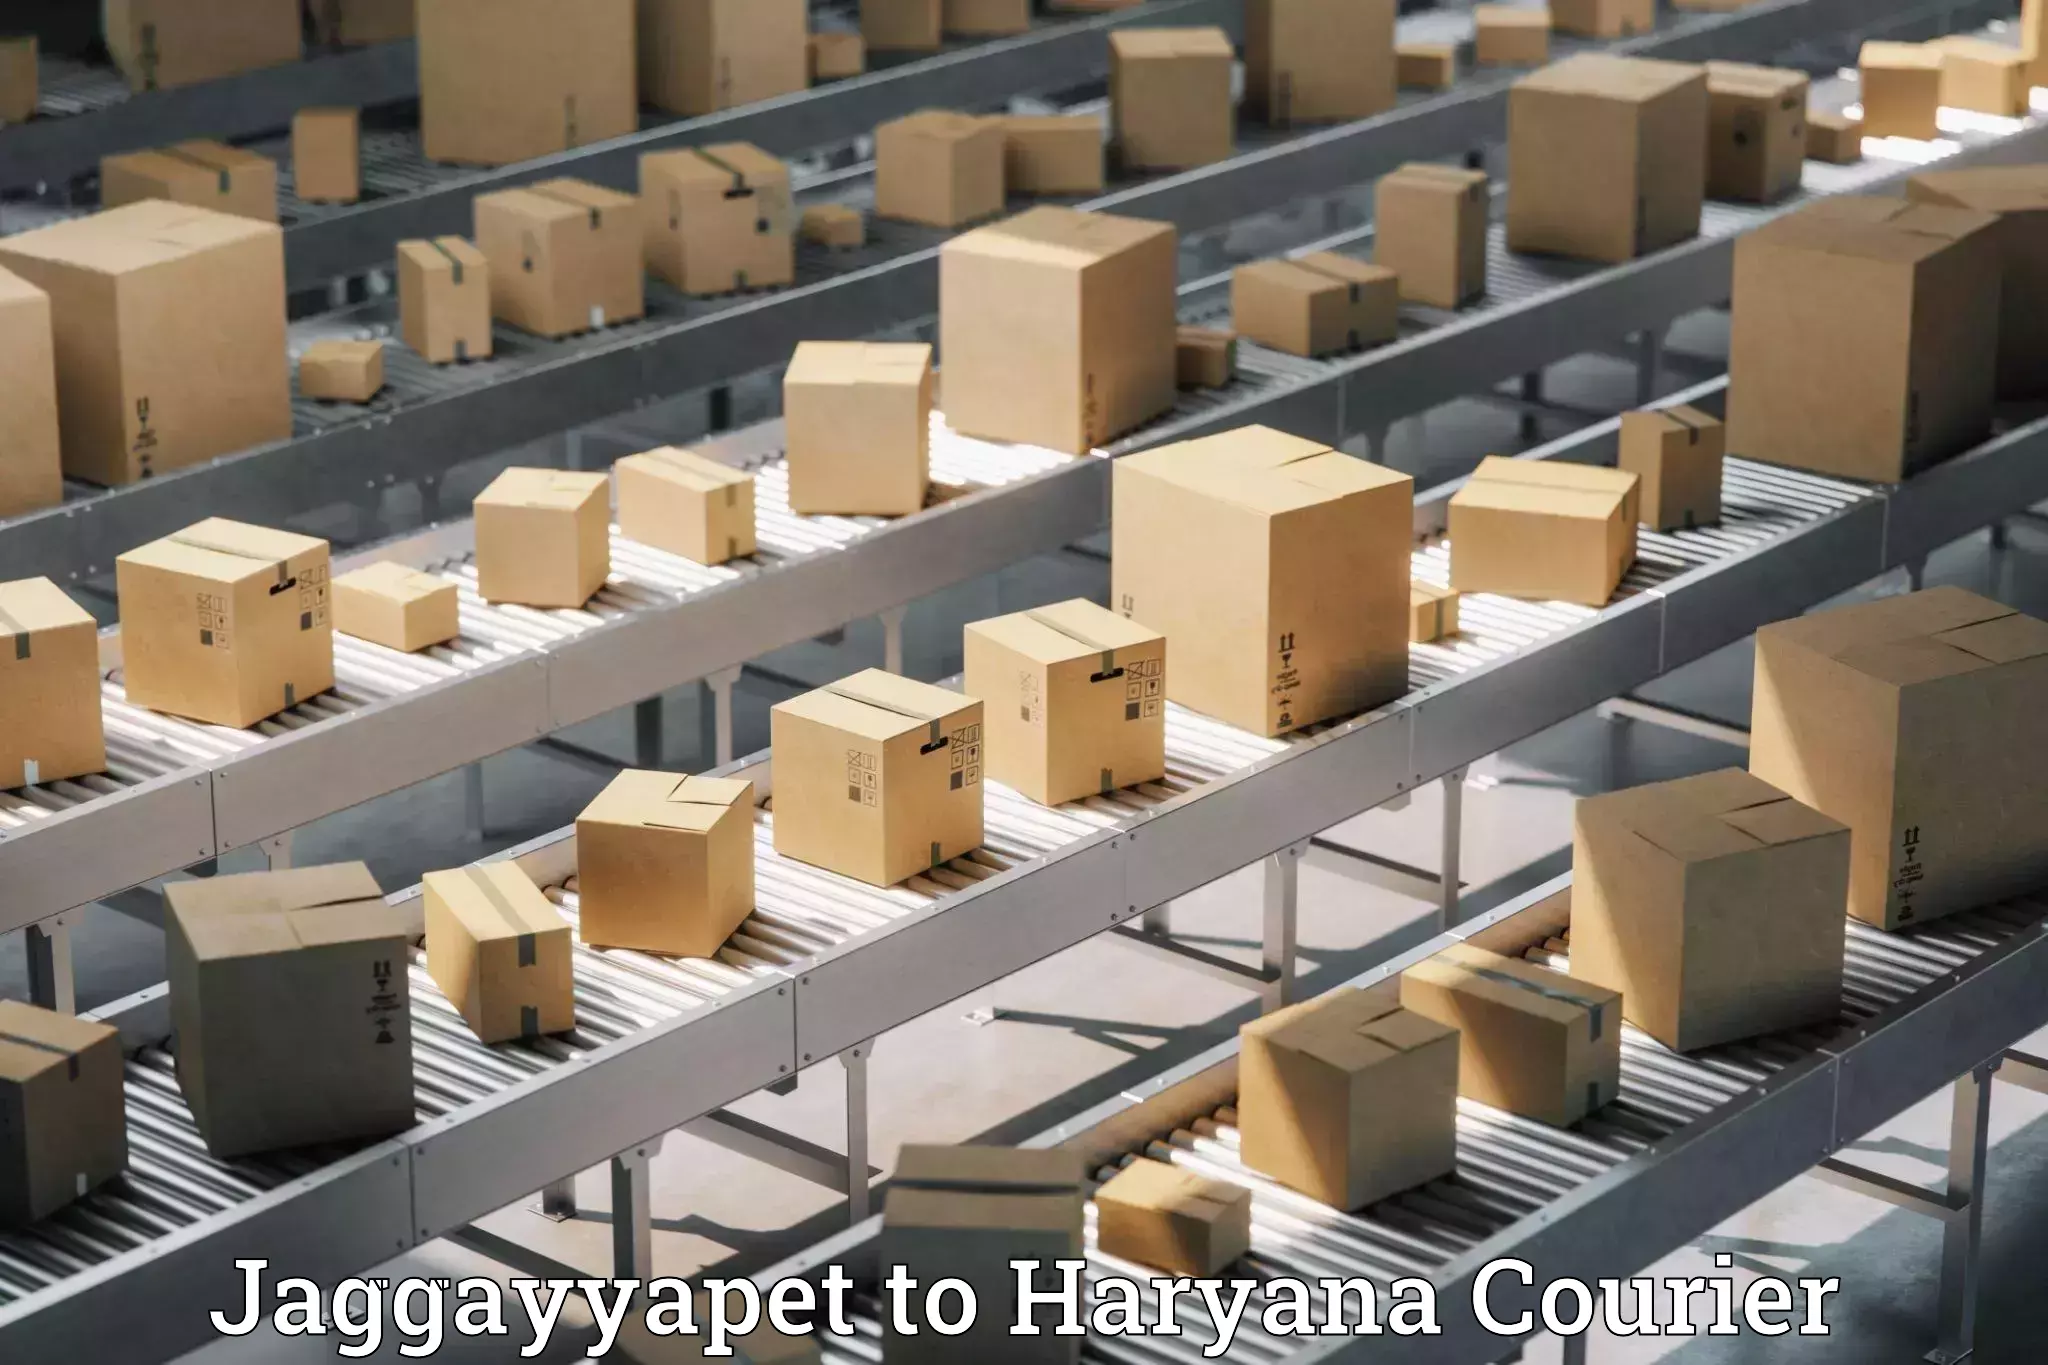 Global parcel delivery Jaggayyapet to Hansi